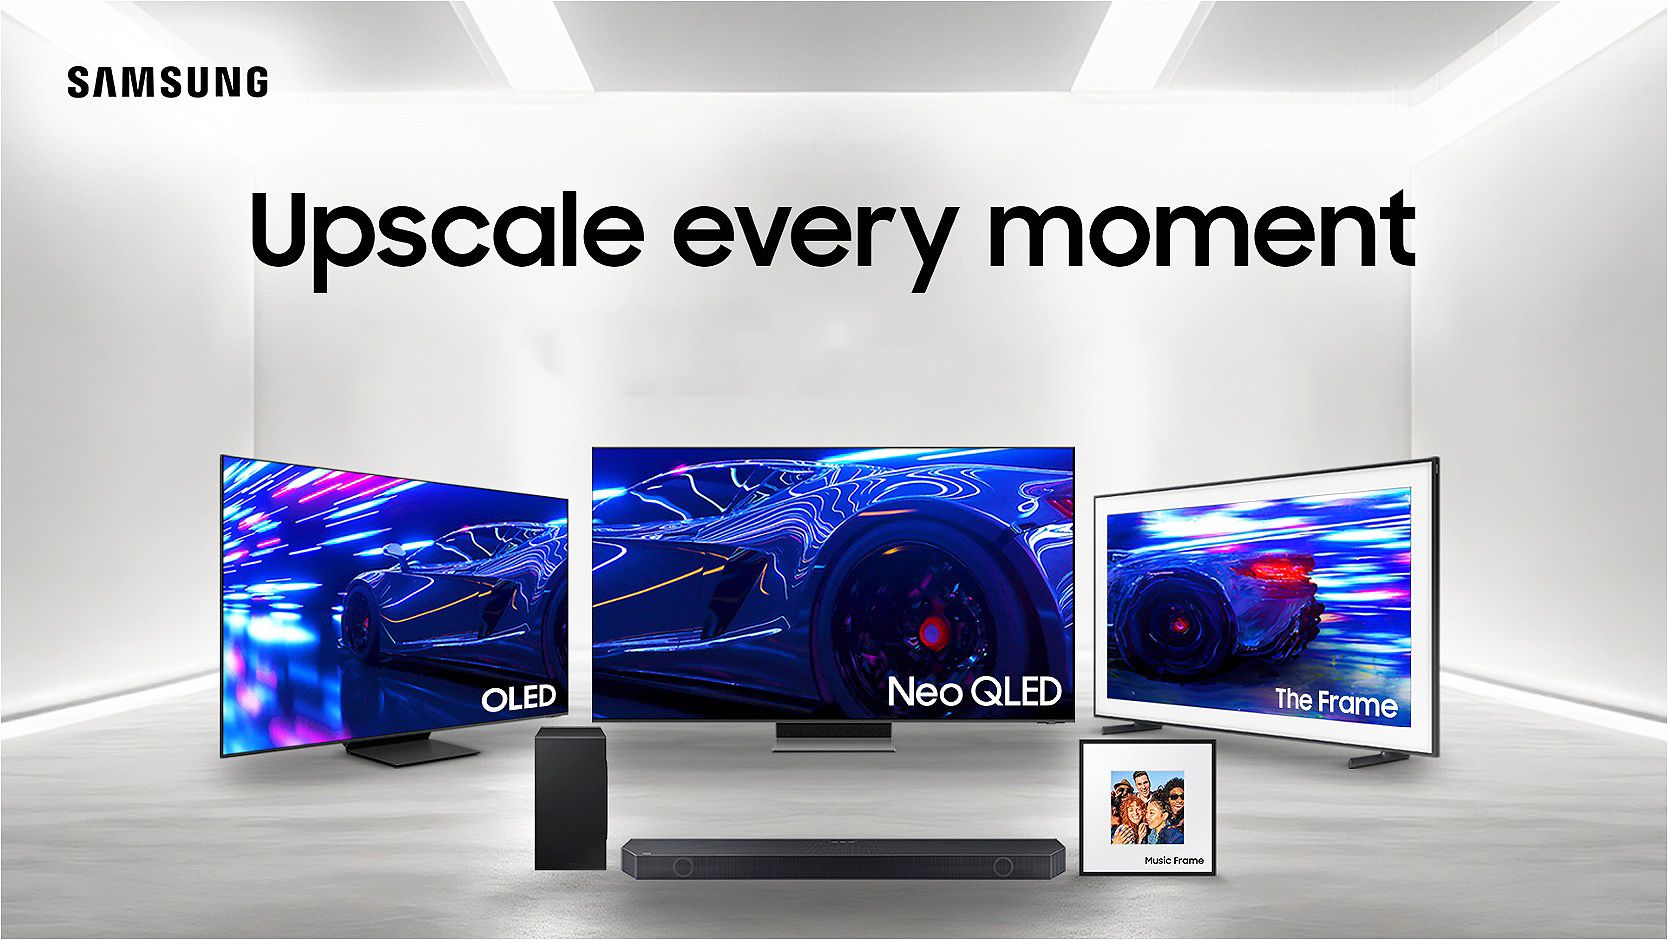 Ya disponibles en España los nuevos televisores Samsung Neo QLED 8K, 4K, QD-OLED y The Frame